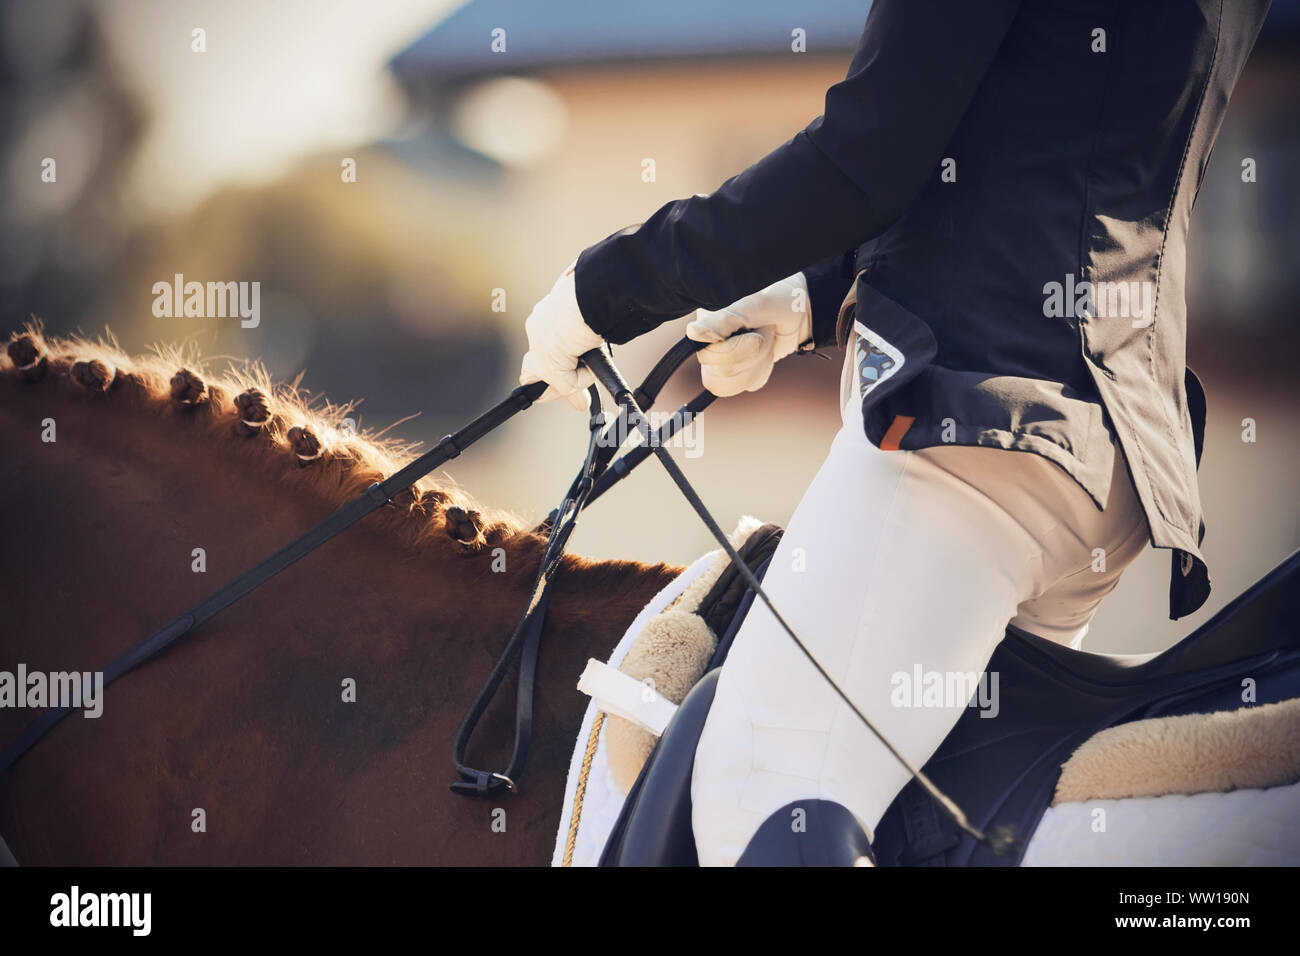 Ein Reiter in einem Anzug und Handschuhe schnell reitet ein Pferd und hält die Zügel. Die Mähne des Pferdes ist geflochten und durch Sonnenlicht beleuchtet. Stockfoto